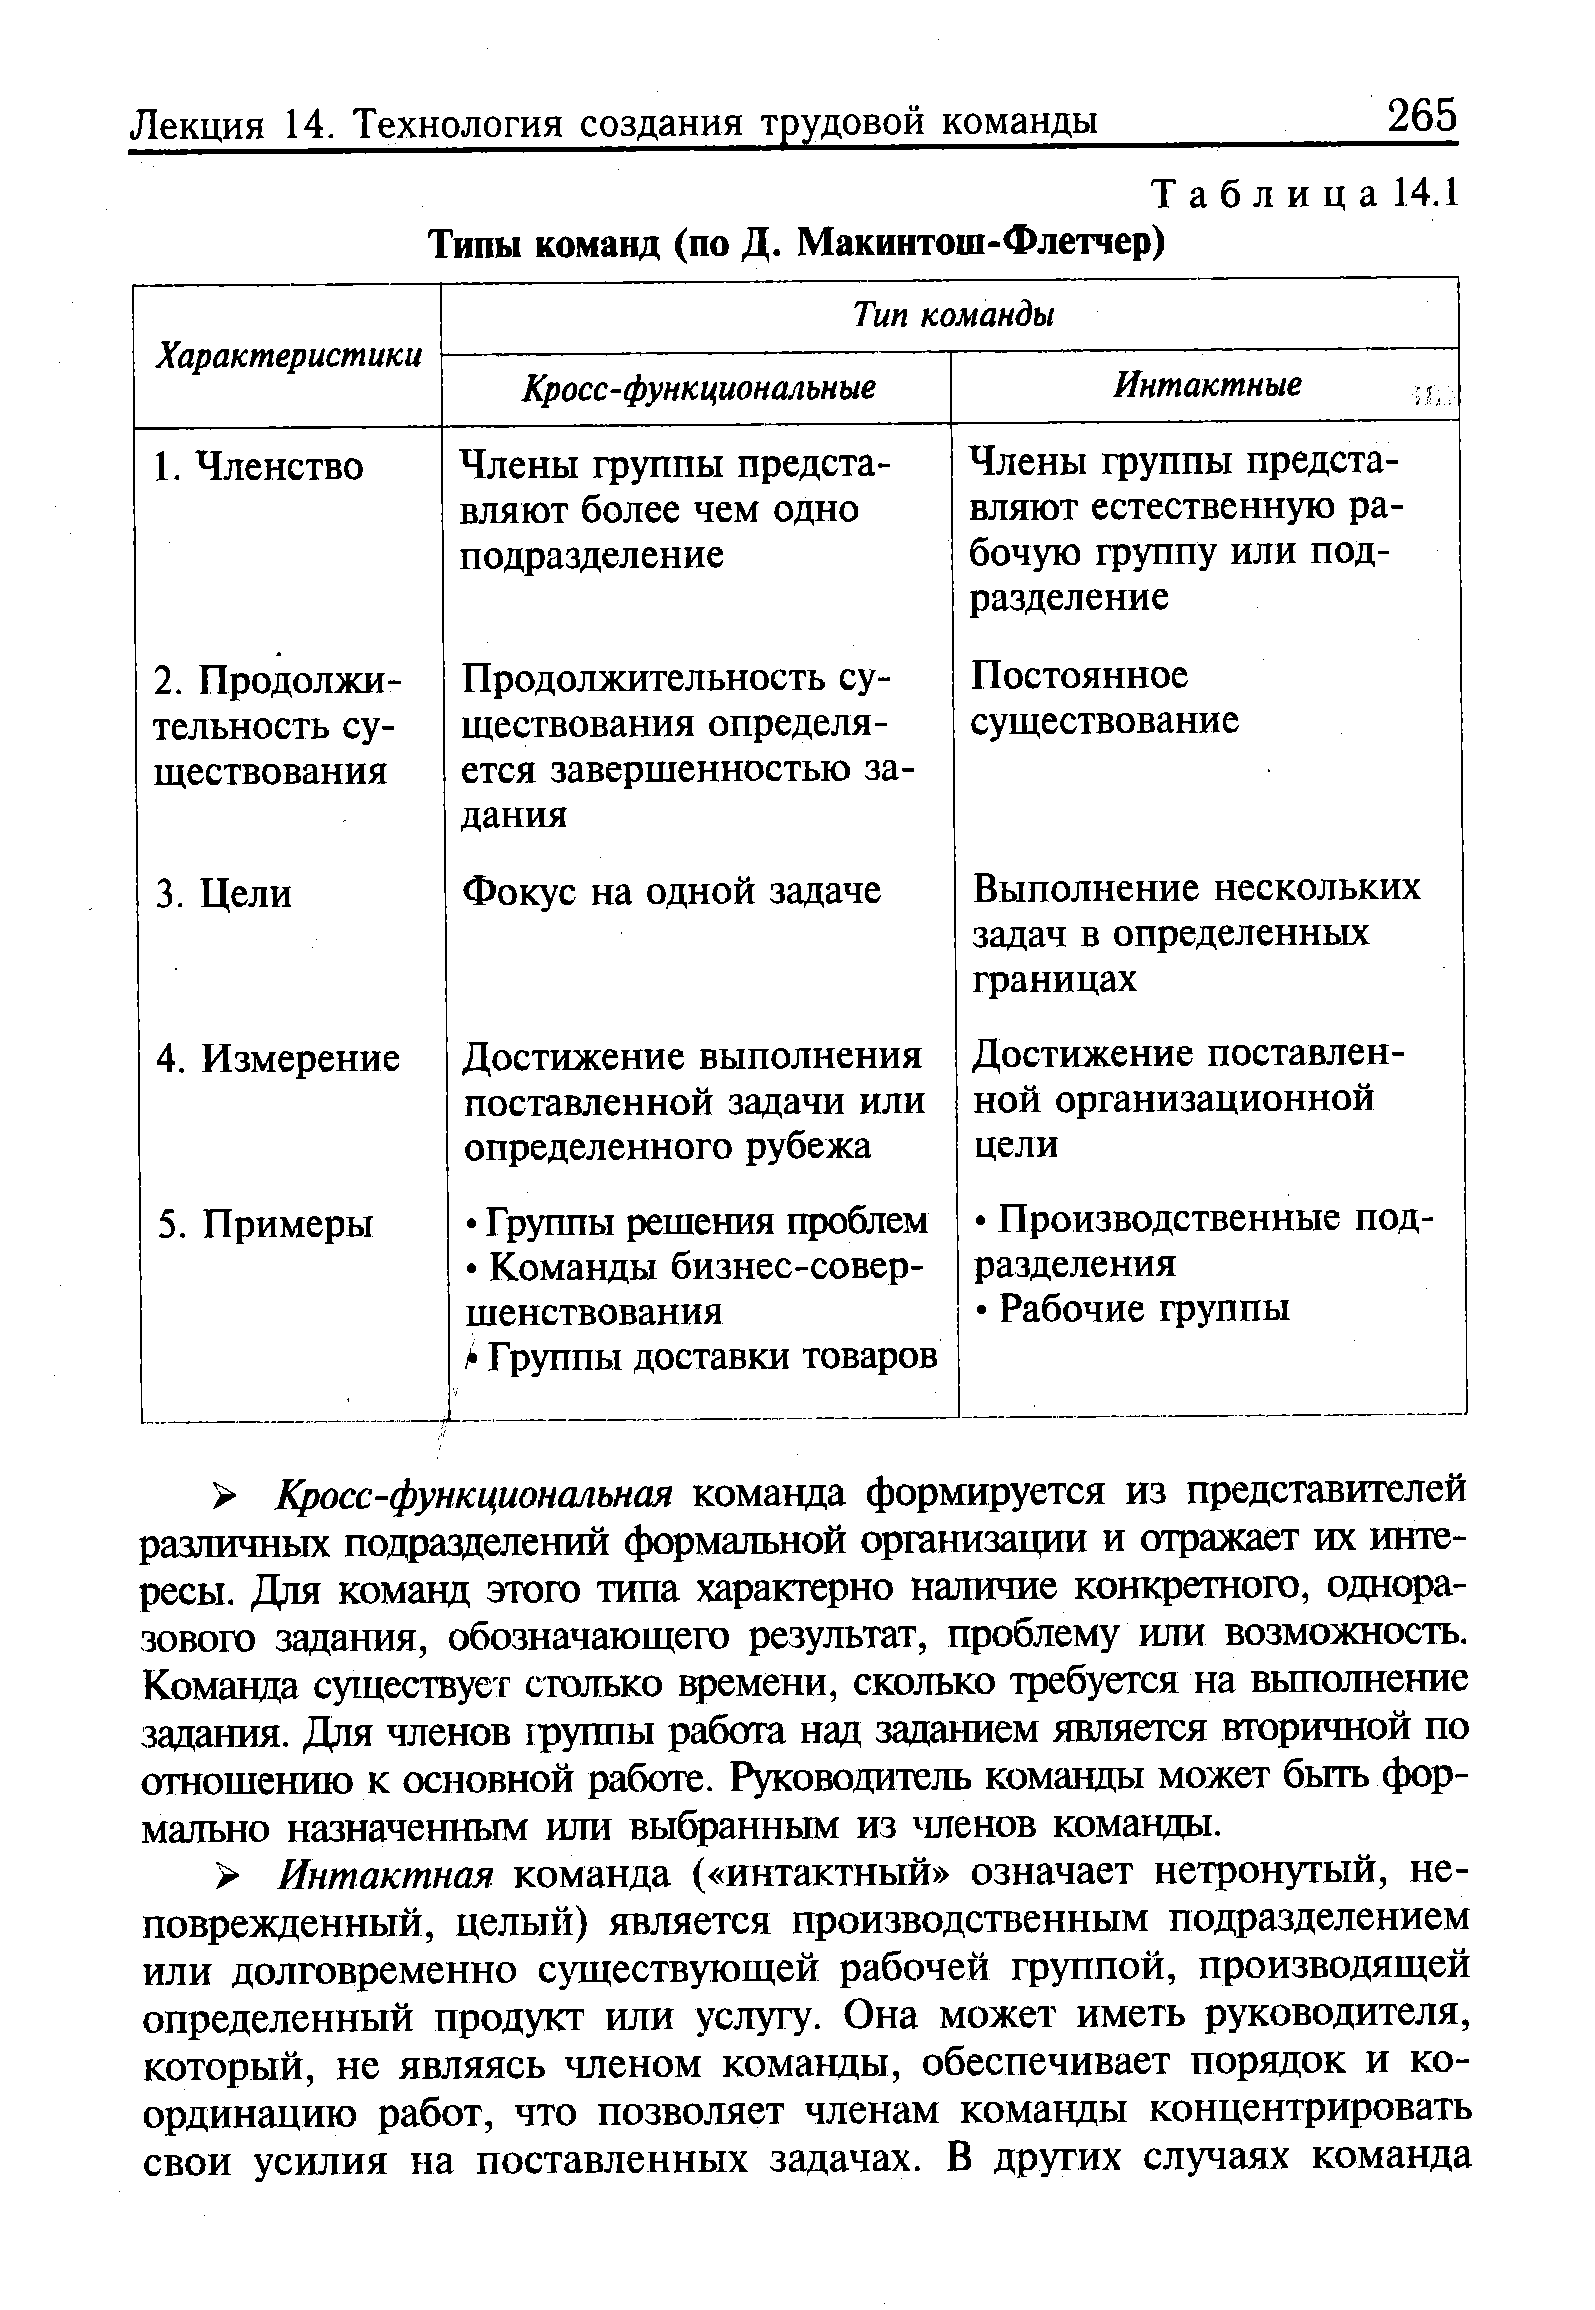 Таблица 14.1 Типы команд (по Д. Макинтош-Флетчер)
